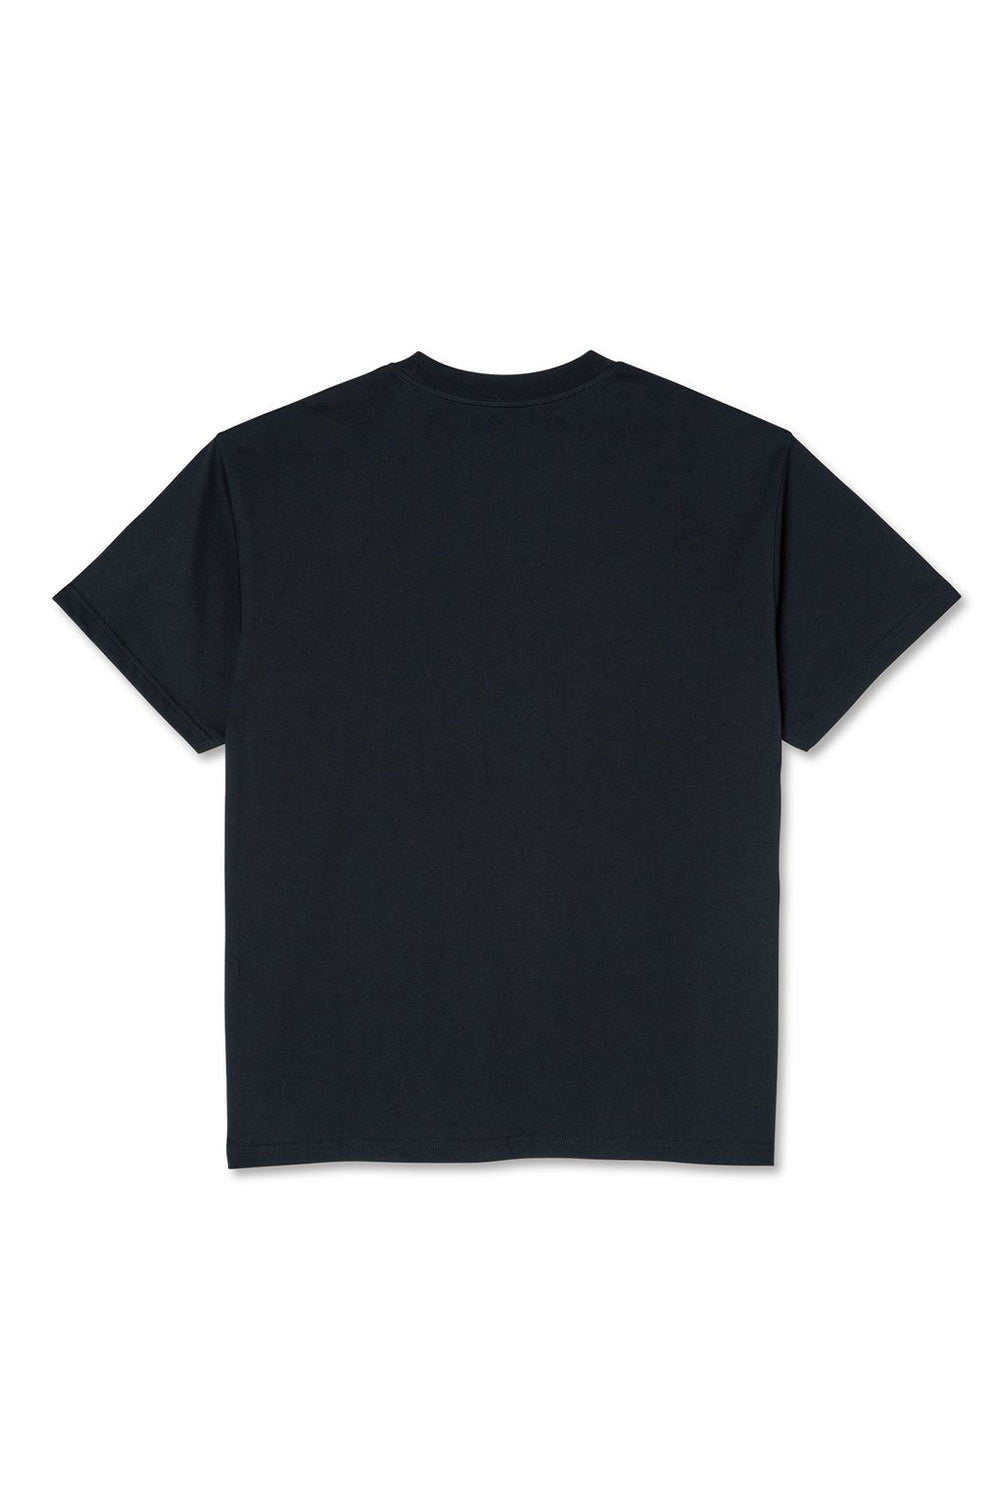 Shop Polar Skate Co | Polar Skate Co Team T-Shirt - Black